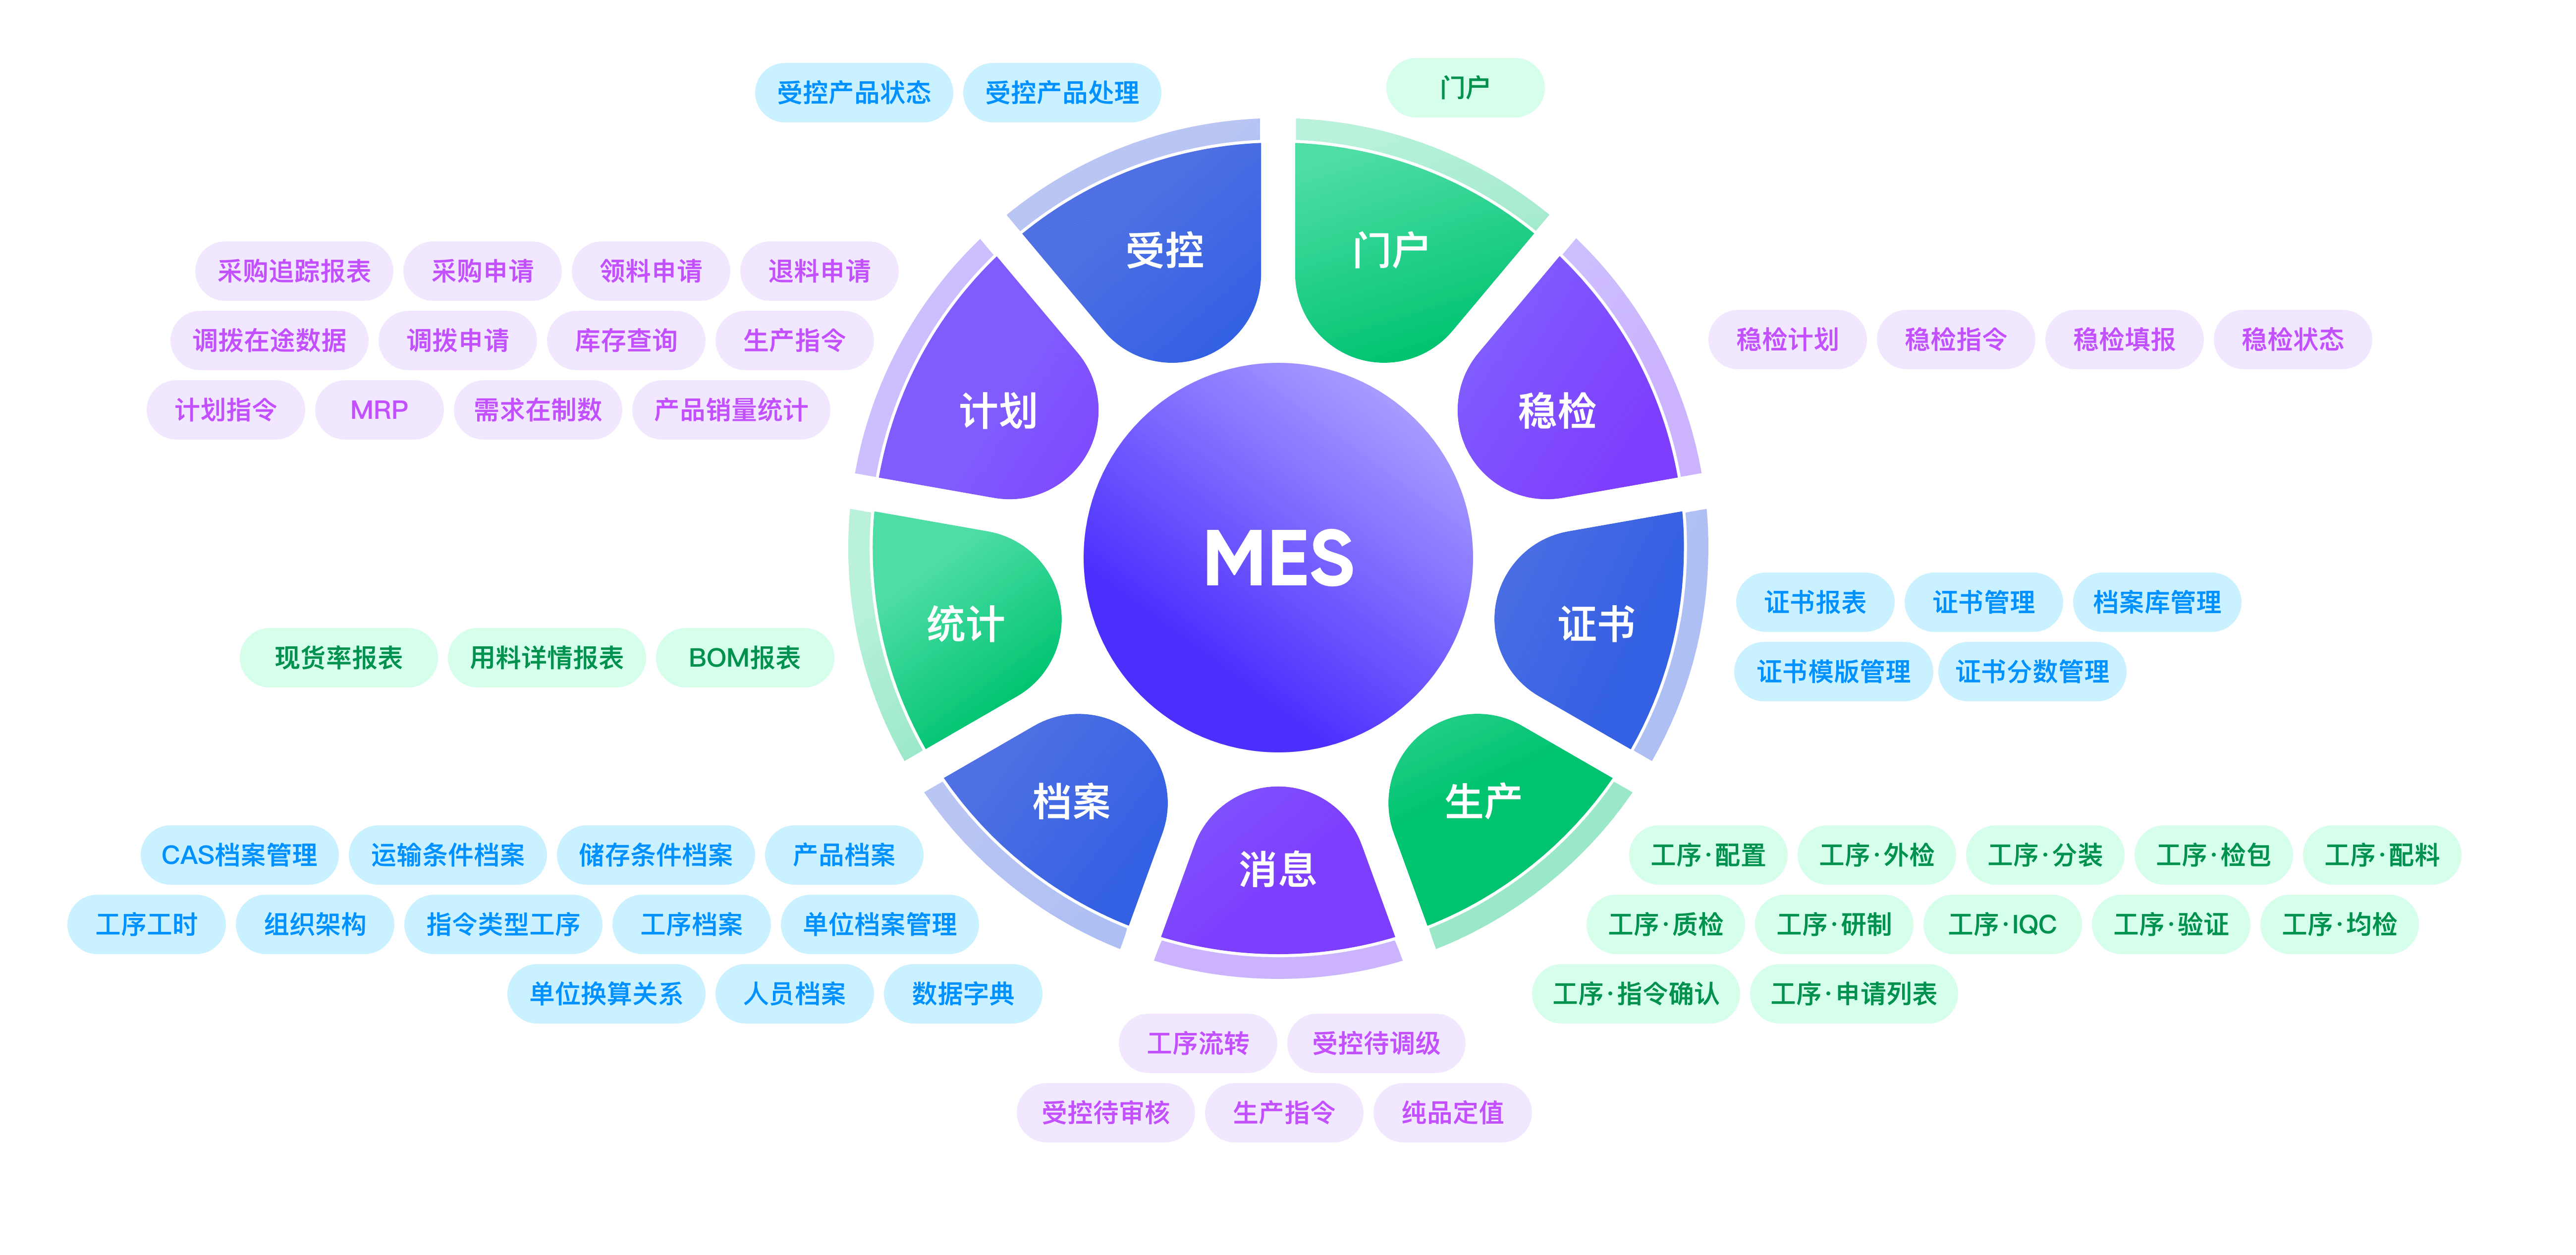 生产制造(MES),mes1.png,第1张